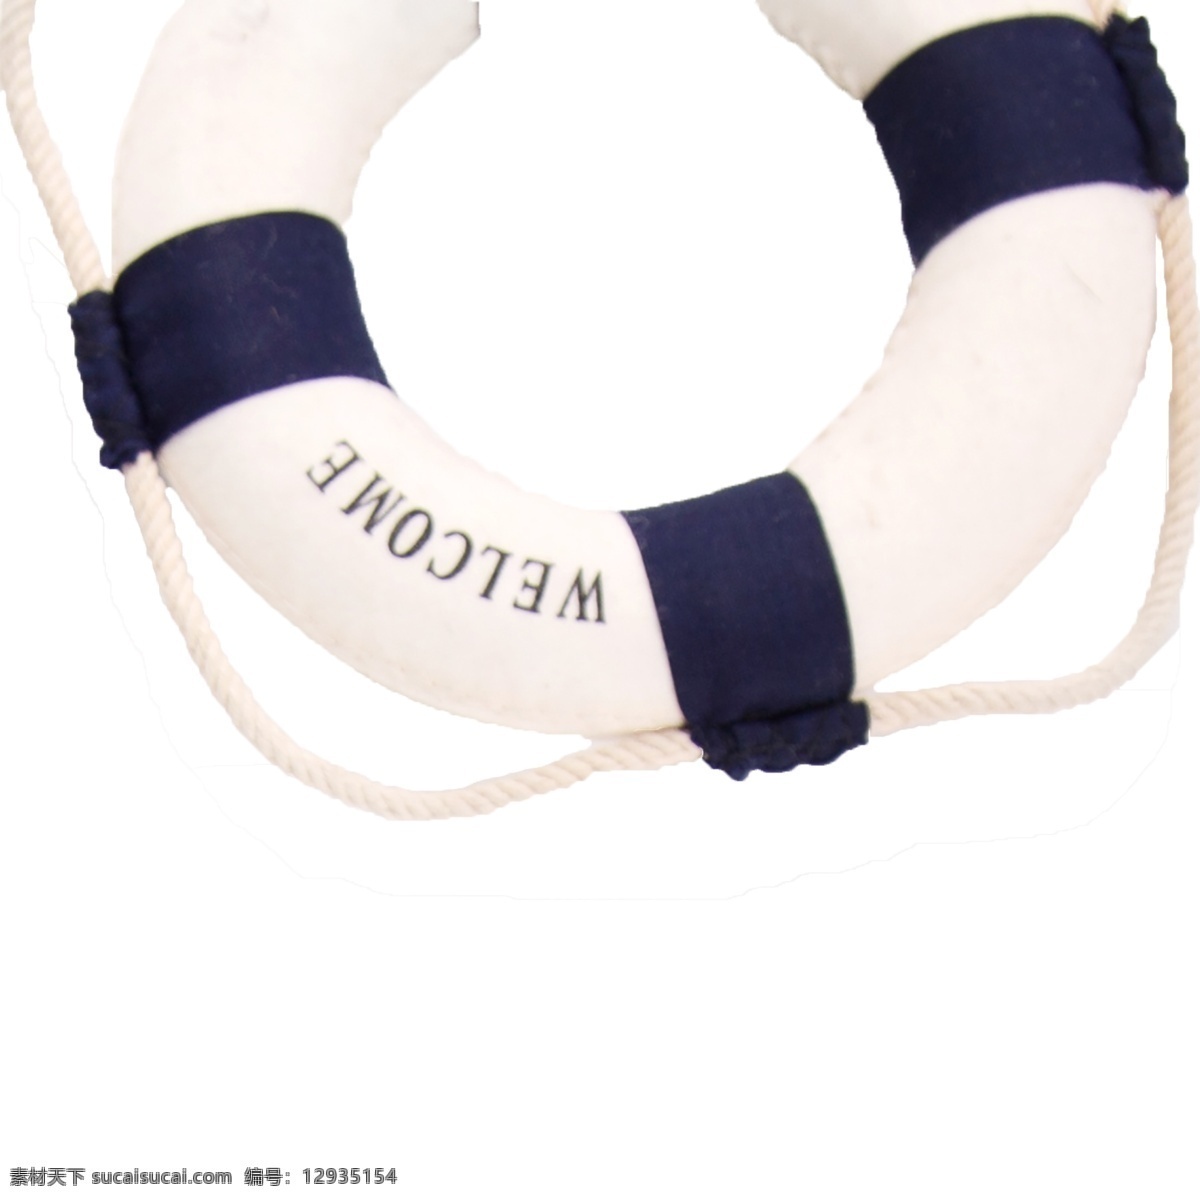 彩色 救生圈 促销 电商 元素 极简 海洋 海洋标签 蓝白 轮船装饰 常用实物 产品实物 原创 商用